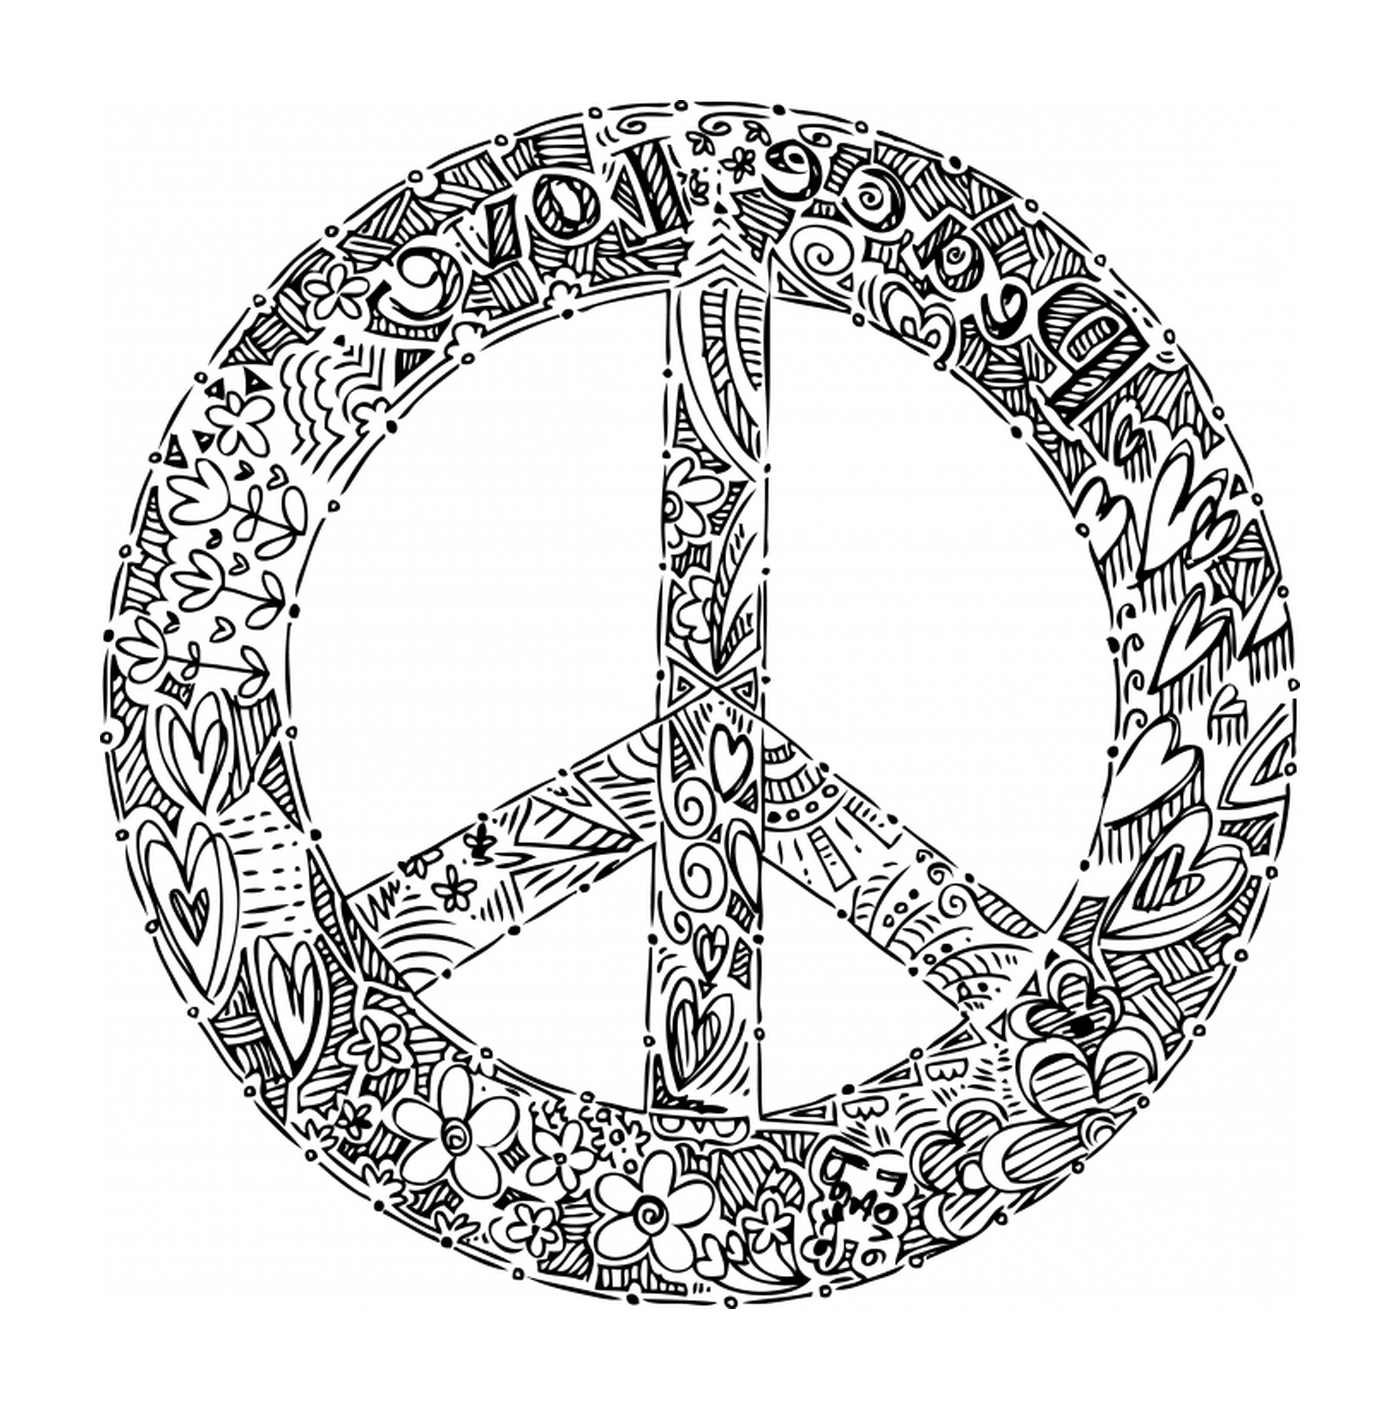   Paix et amour, logo 